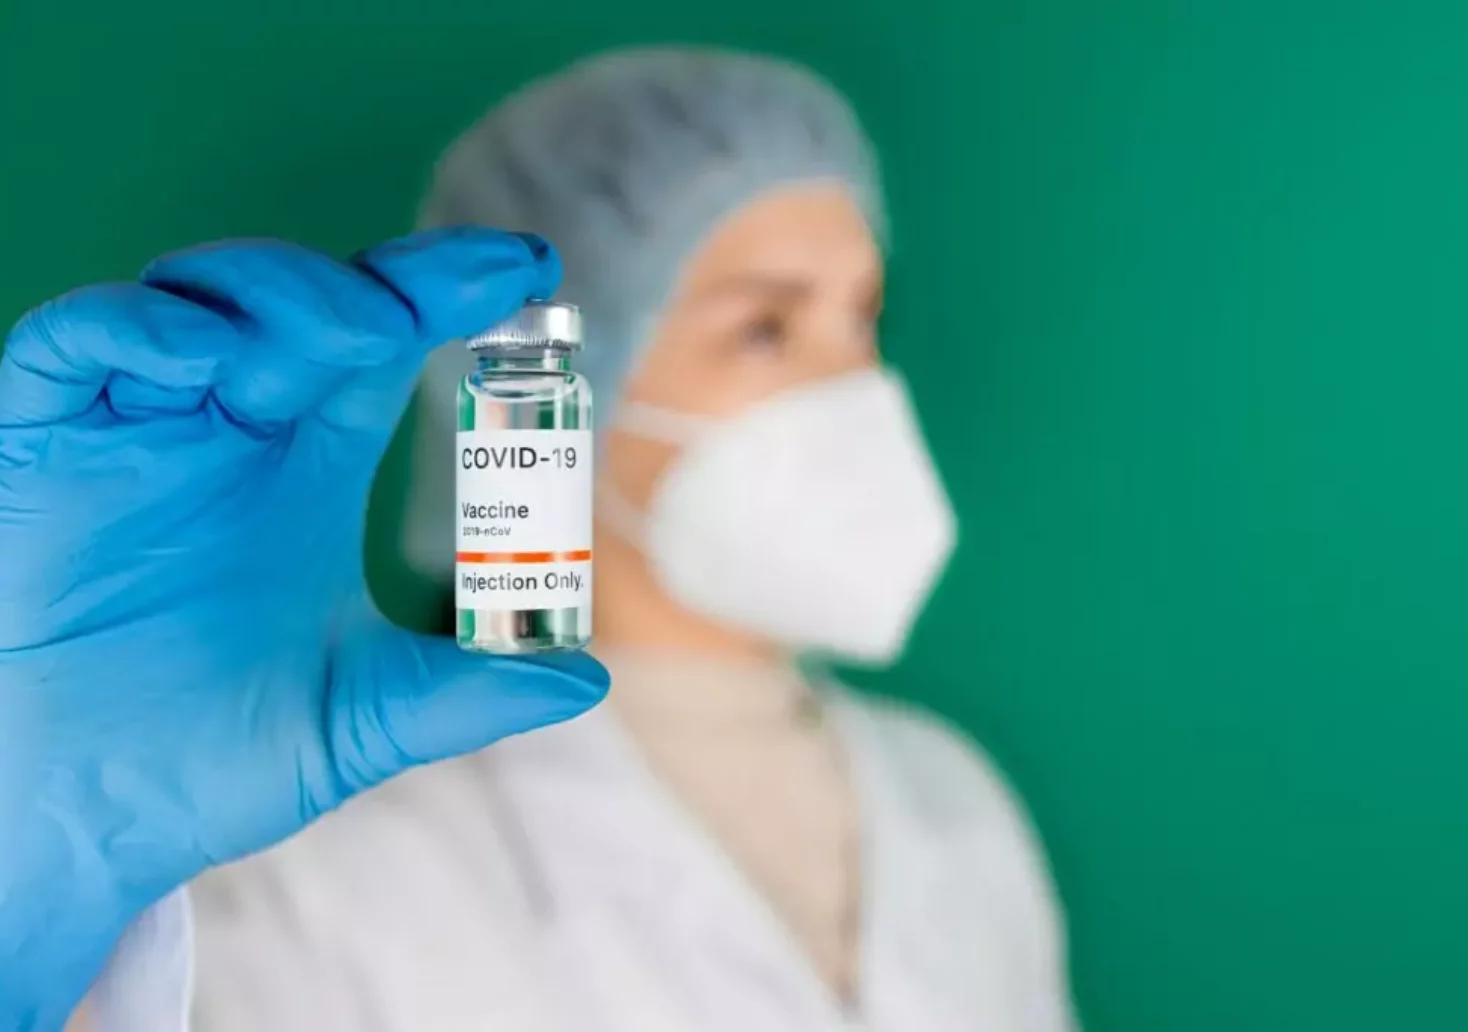 Corona-Impfstoff: AstraZeneca gesteht erstmals schwere Nebenwirkung